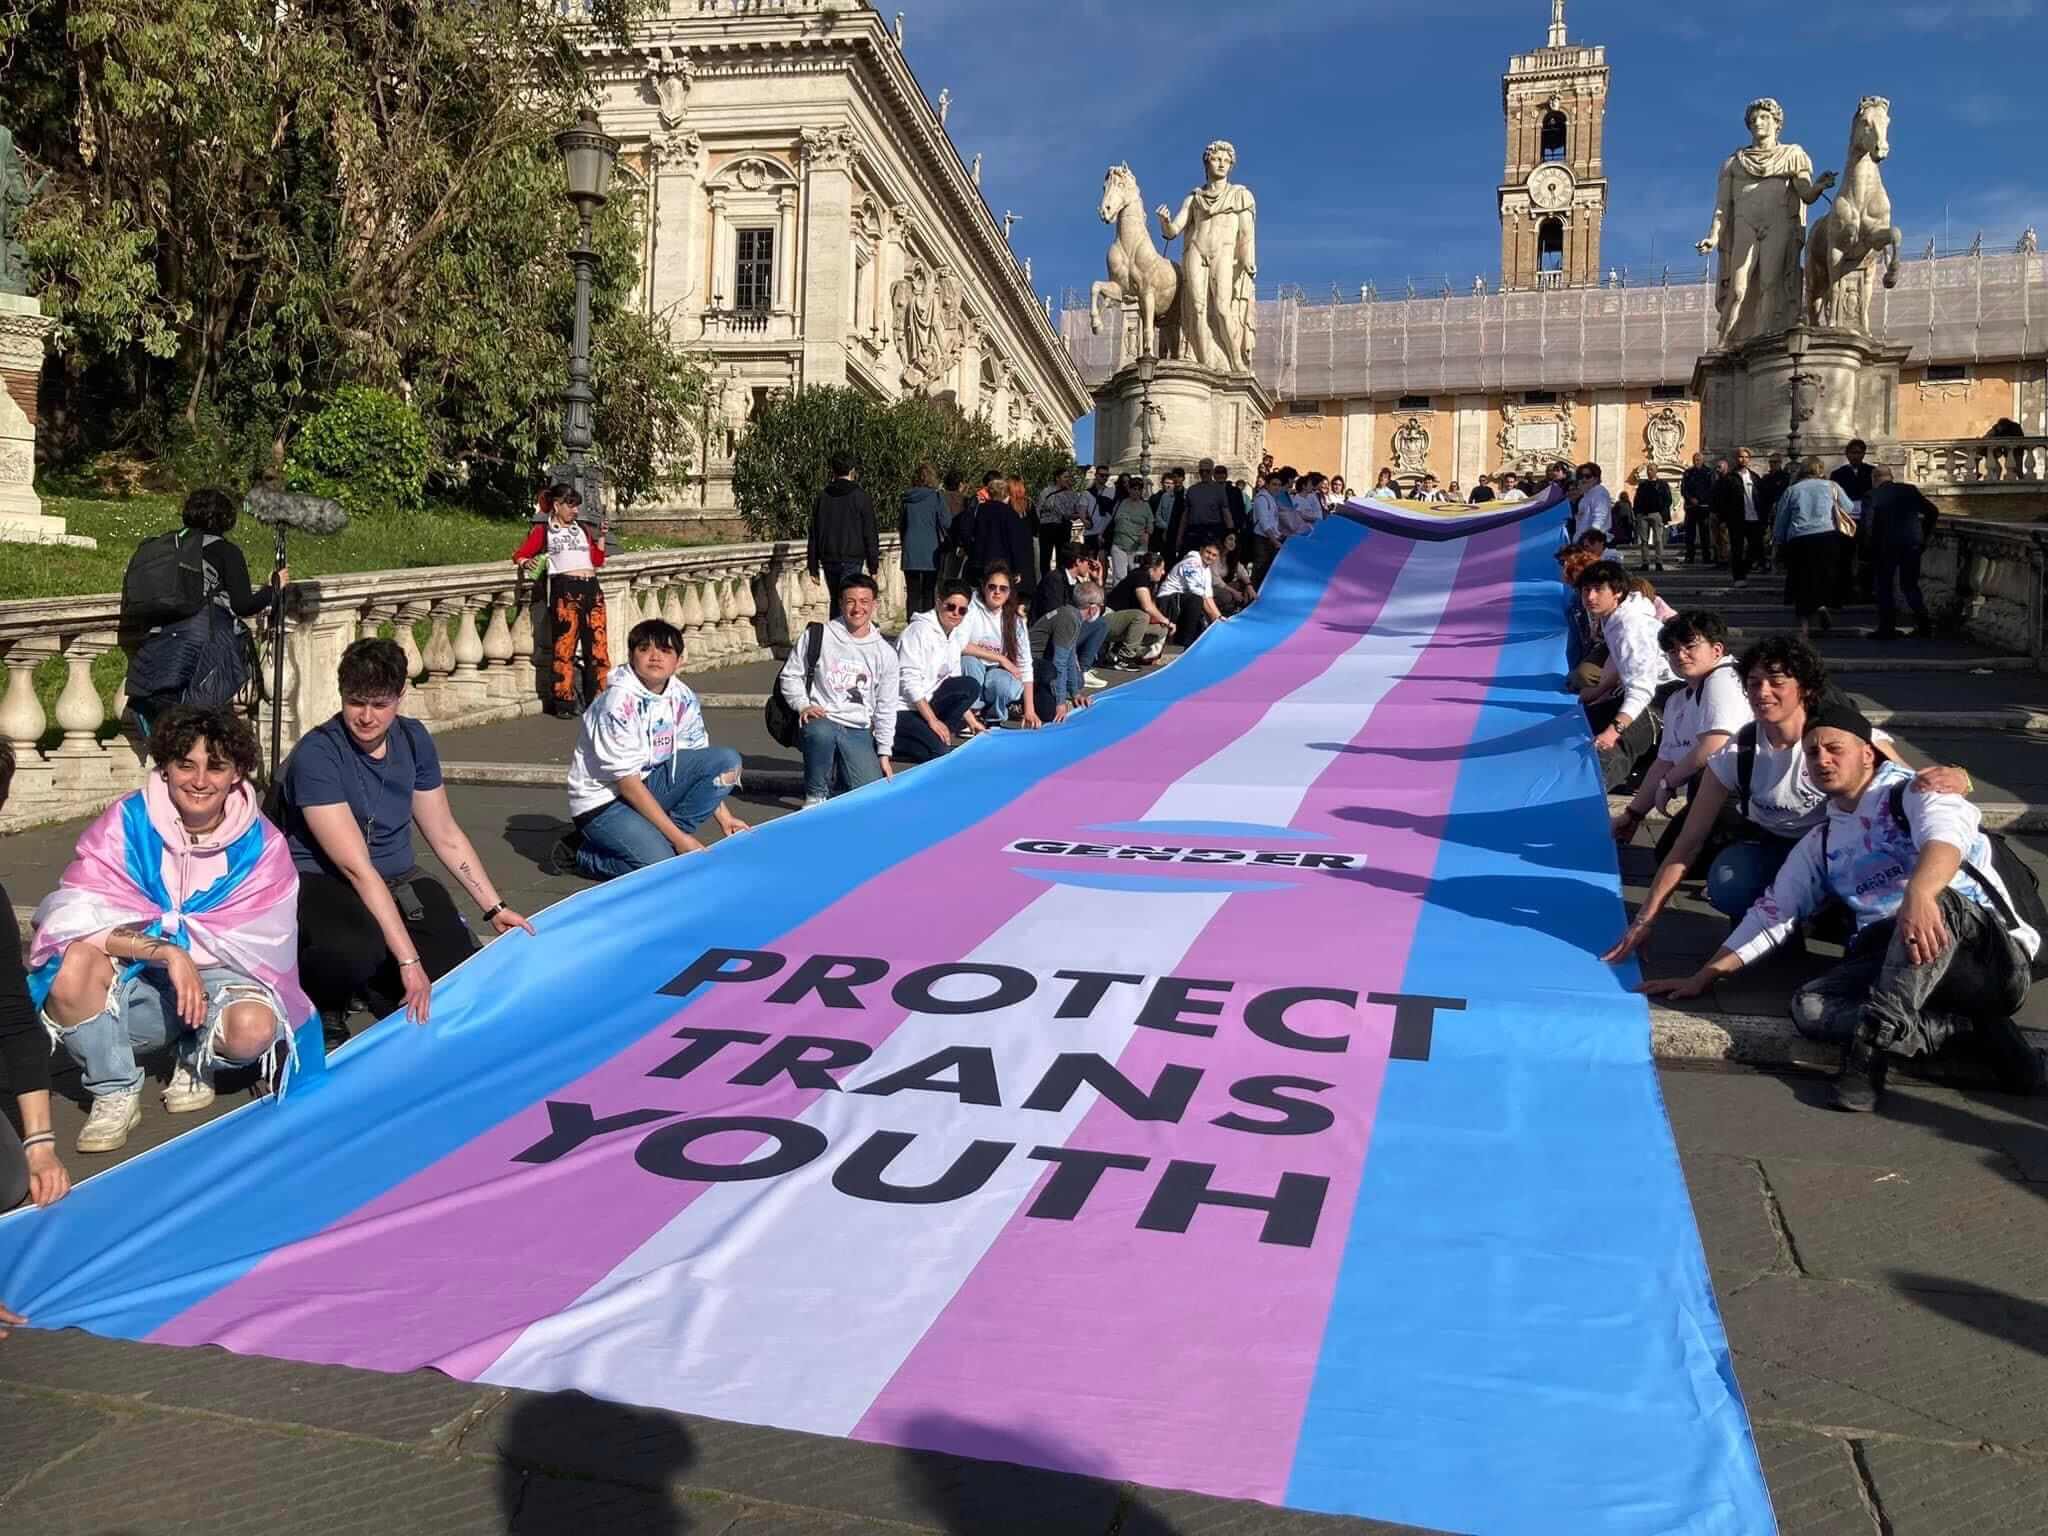 Roma, quasi 10.000 persone al primo corteo per la difesa dei diritti delle giovani persone trans - Roma quasi 10.000 persone al primo corteo per la difesa dei diritti delle persona trans 3 - Gay.it